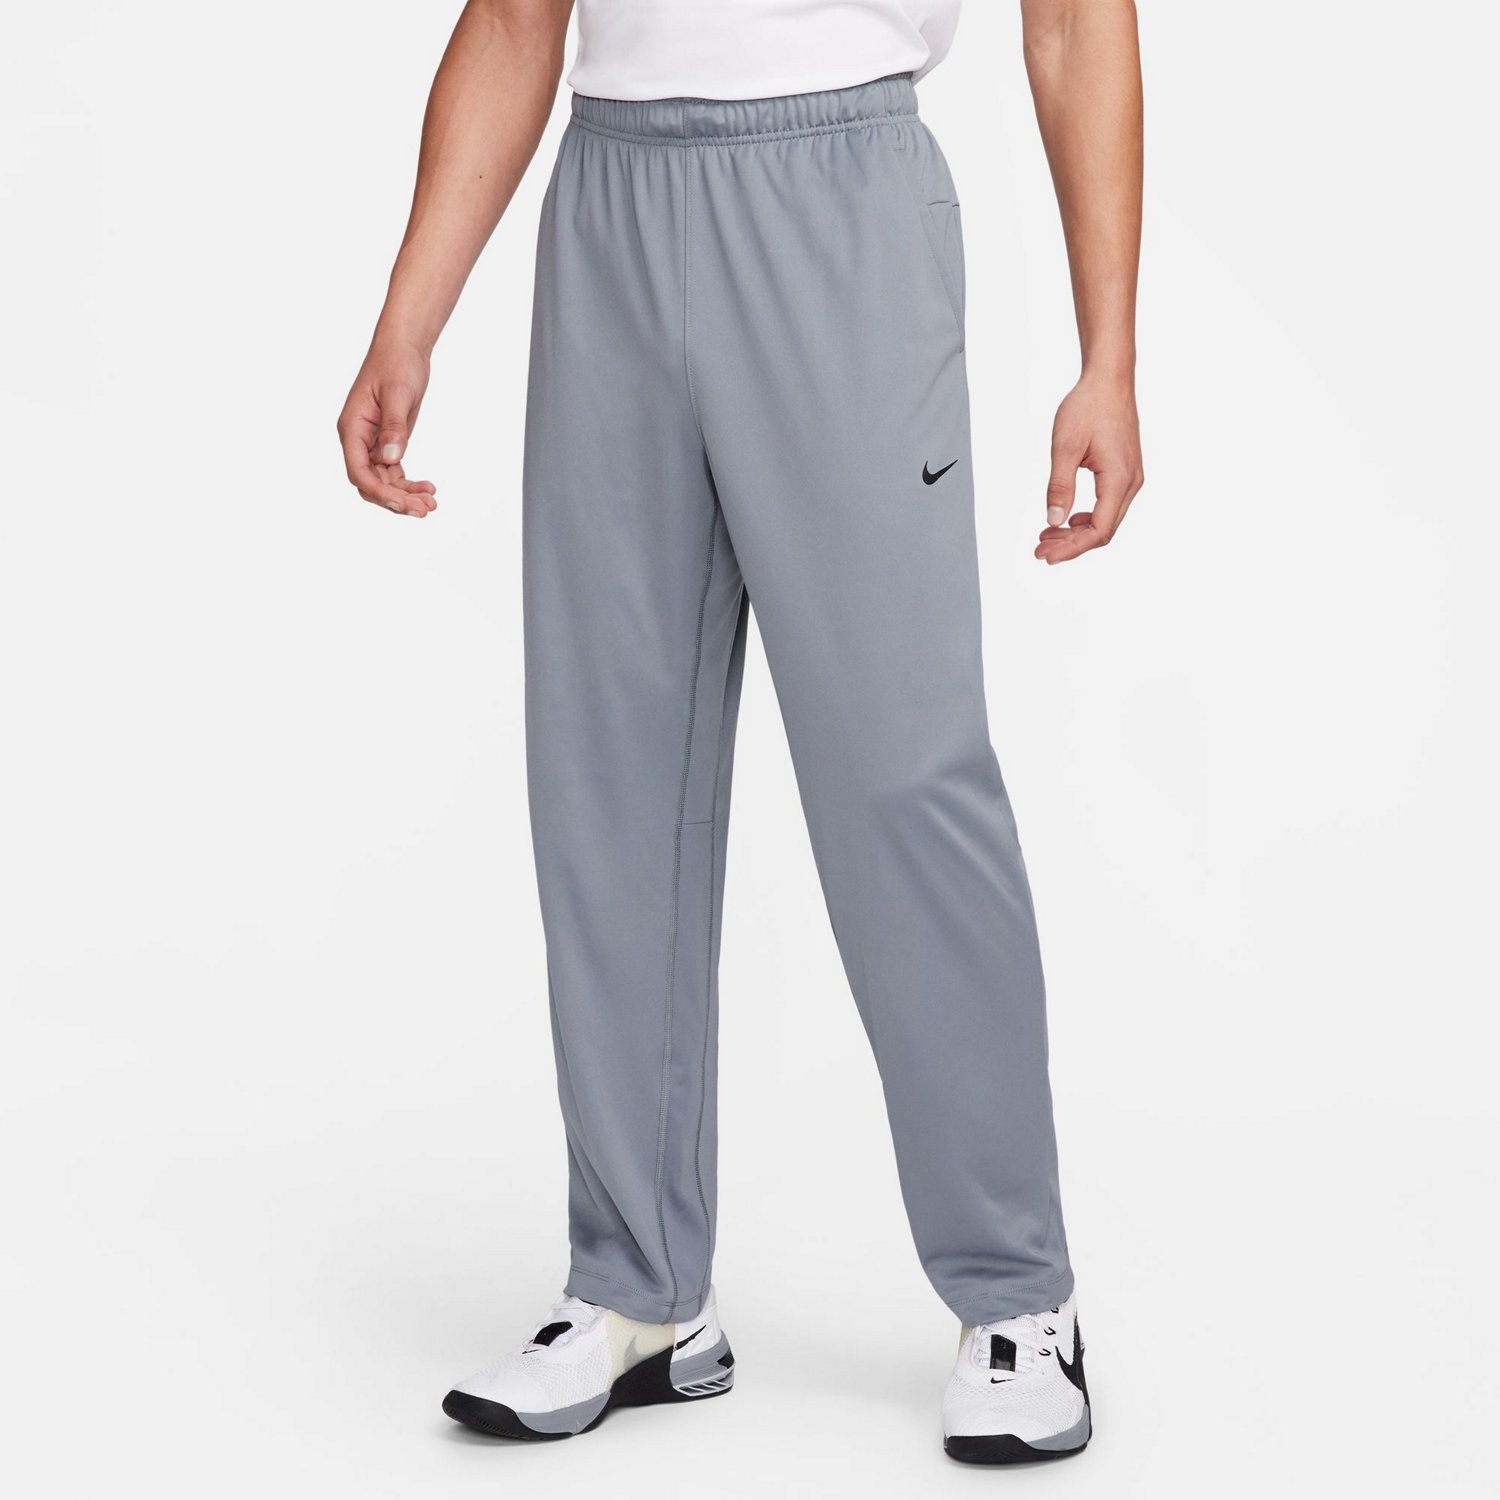 Nike Men's Dri-FIT Totality Fitness Pants